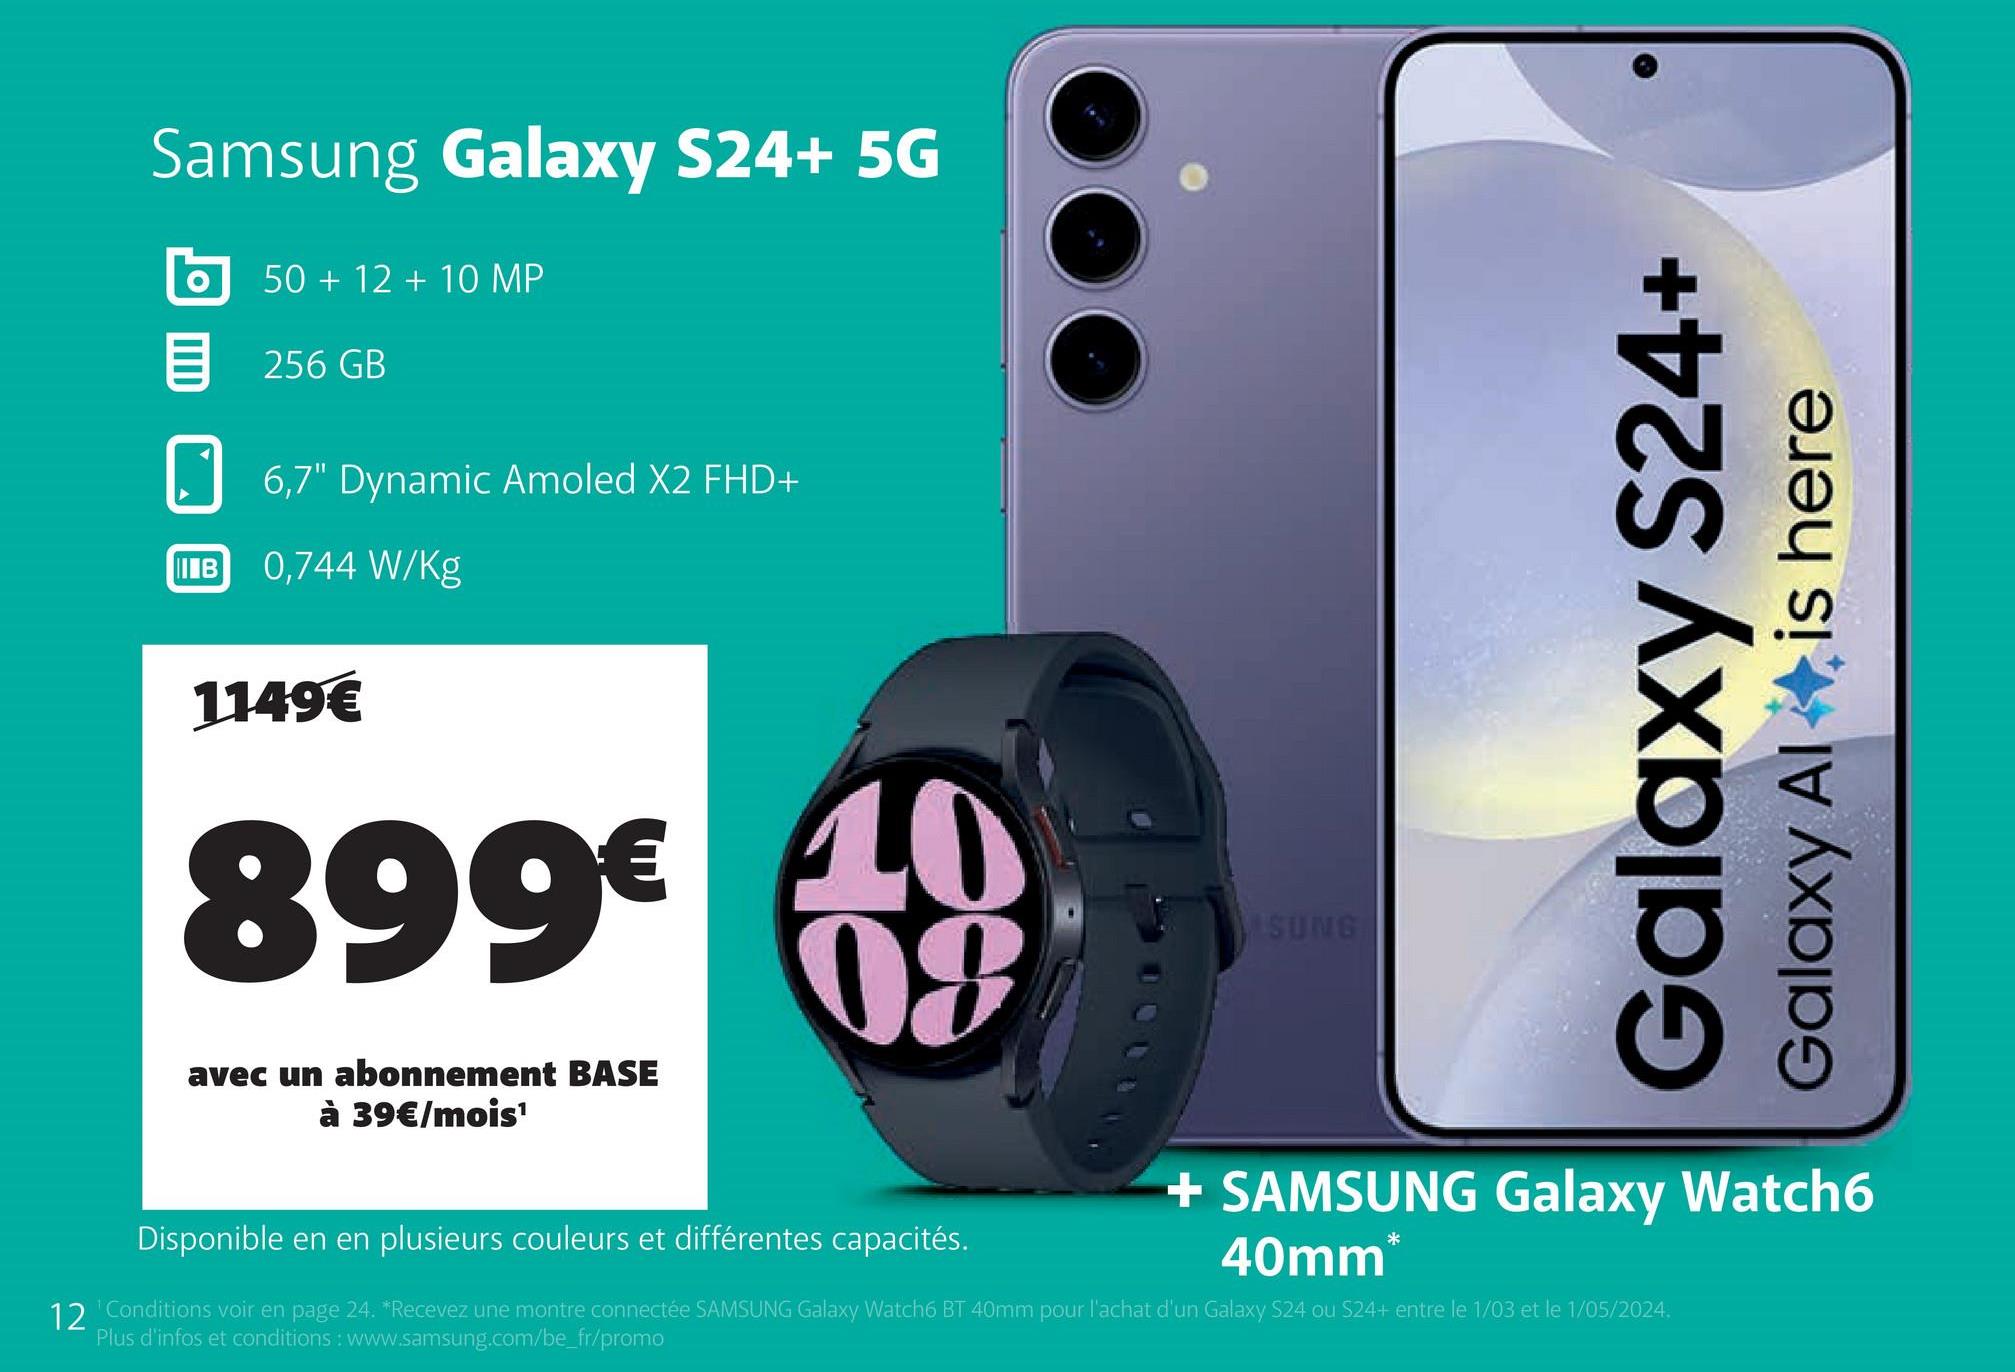 Samsung Galaxy S24+ 5G
50+12+10 MP
目 256GB
6,7" Dynamic Amoled X2 FHD+
IB 0,744 W/Kg
1149€
899€ 40
08
avec un abonnement BASE
à 39€/mois¹
Disponible en en plusieurs couleurs et différentes capacités.
SUNG
Galaxy S24+
Galaxy Al
is here
+ SAMSUNG Galaxy Watch6
40mm
*
12 'Conditions voir en page 24. *Recevez une montre connectée SAMSUNG Galaxy Watch6 BT 40mm pour l'achat d'un Galaxy S24 ou S24+ entre le 1/03 et le 1/05/2024.
Plus d'infos et conditions: www.samsung.com/be_fr/promo